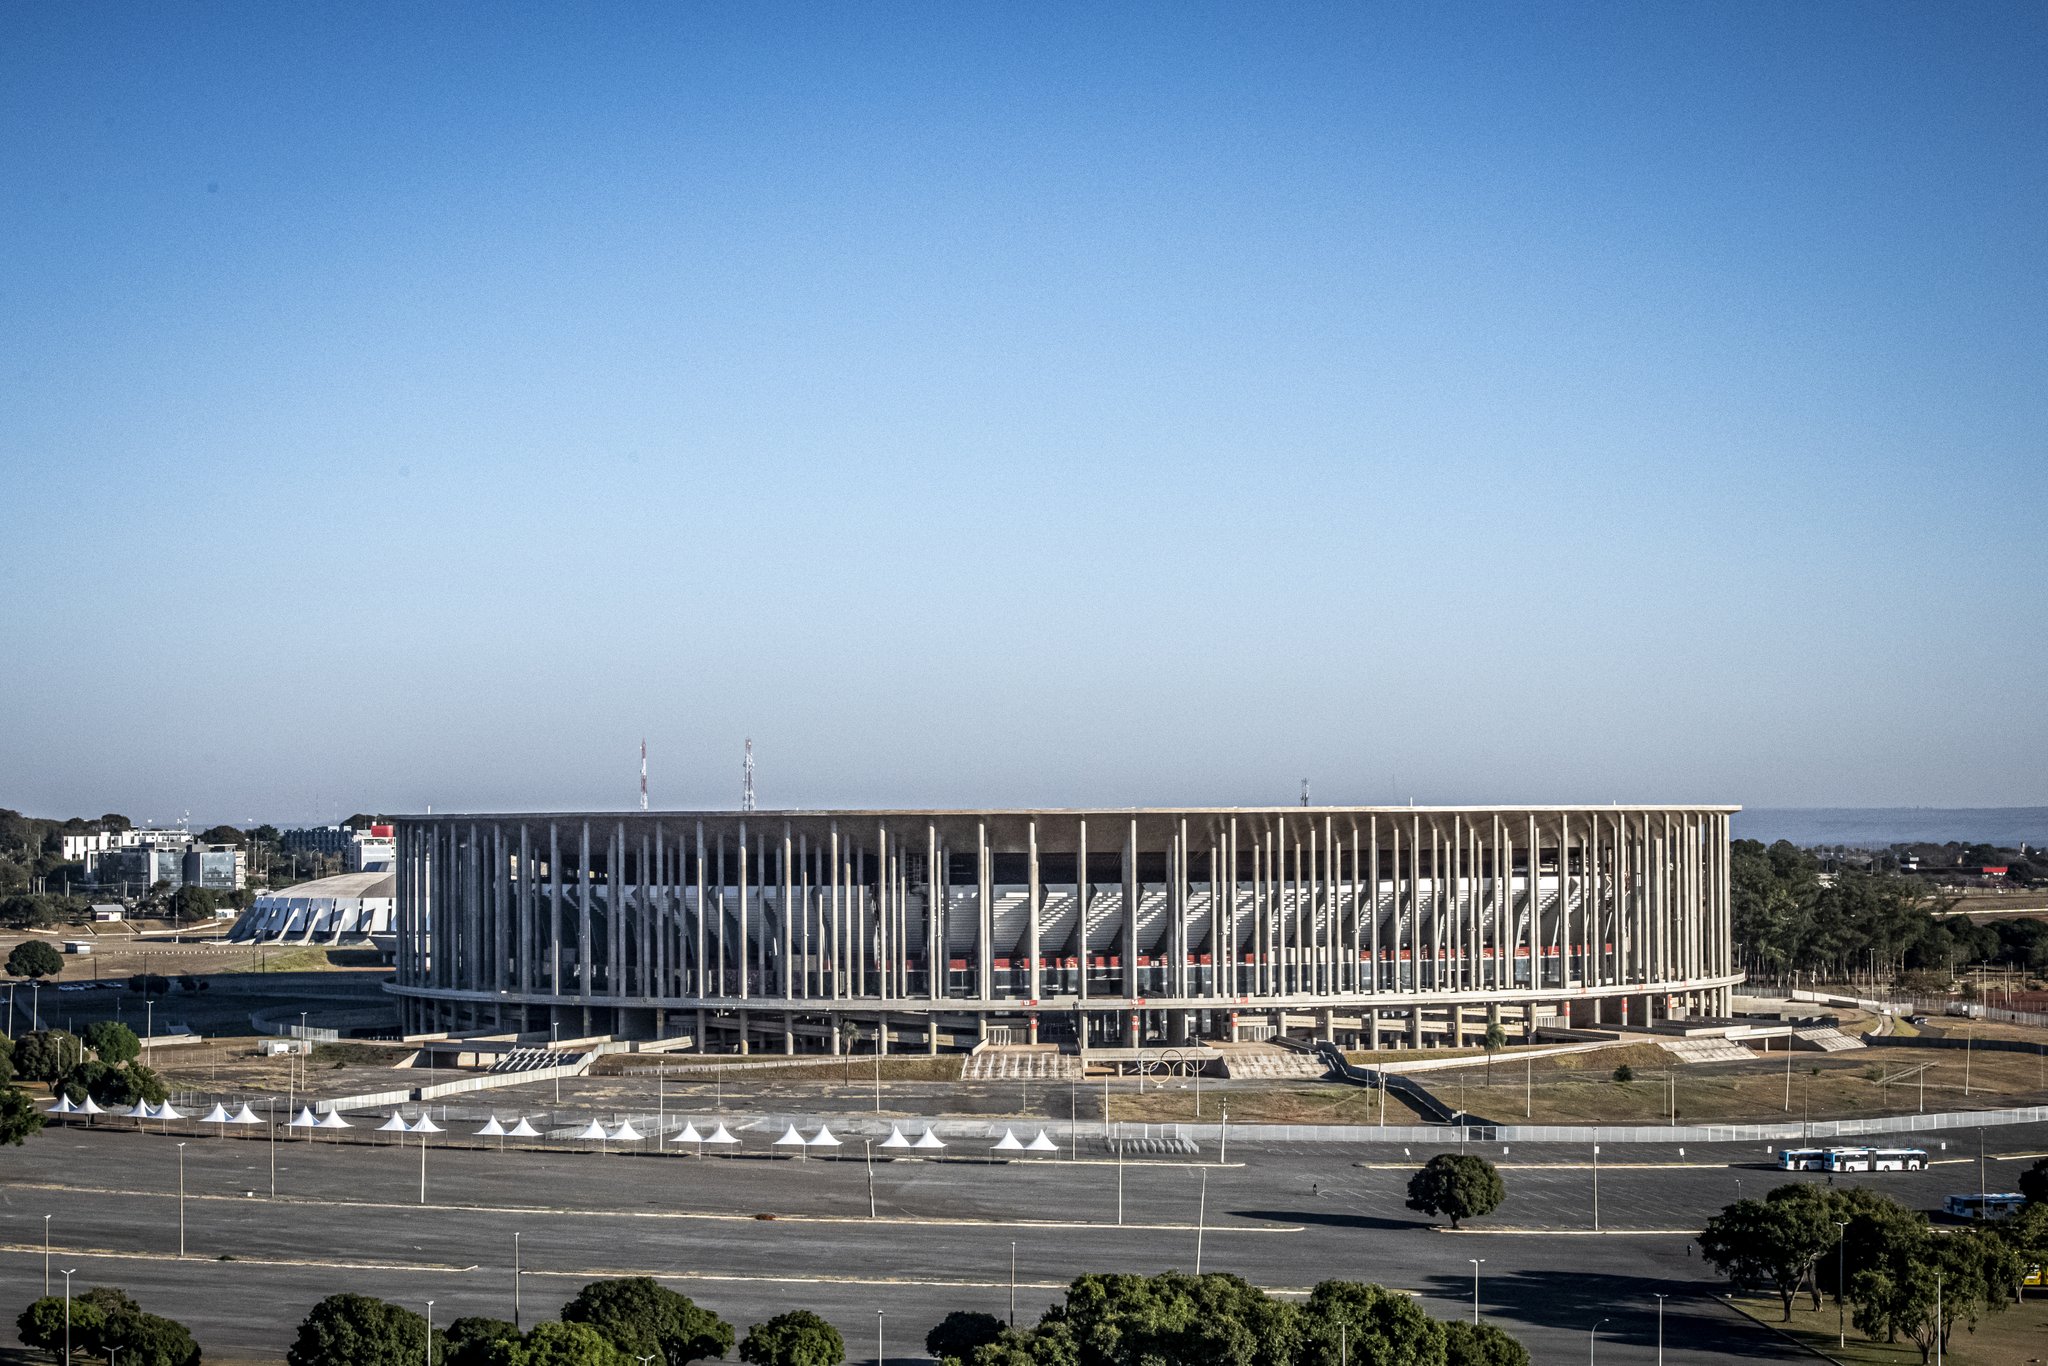 Estádio Mané Garrincha